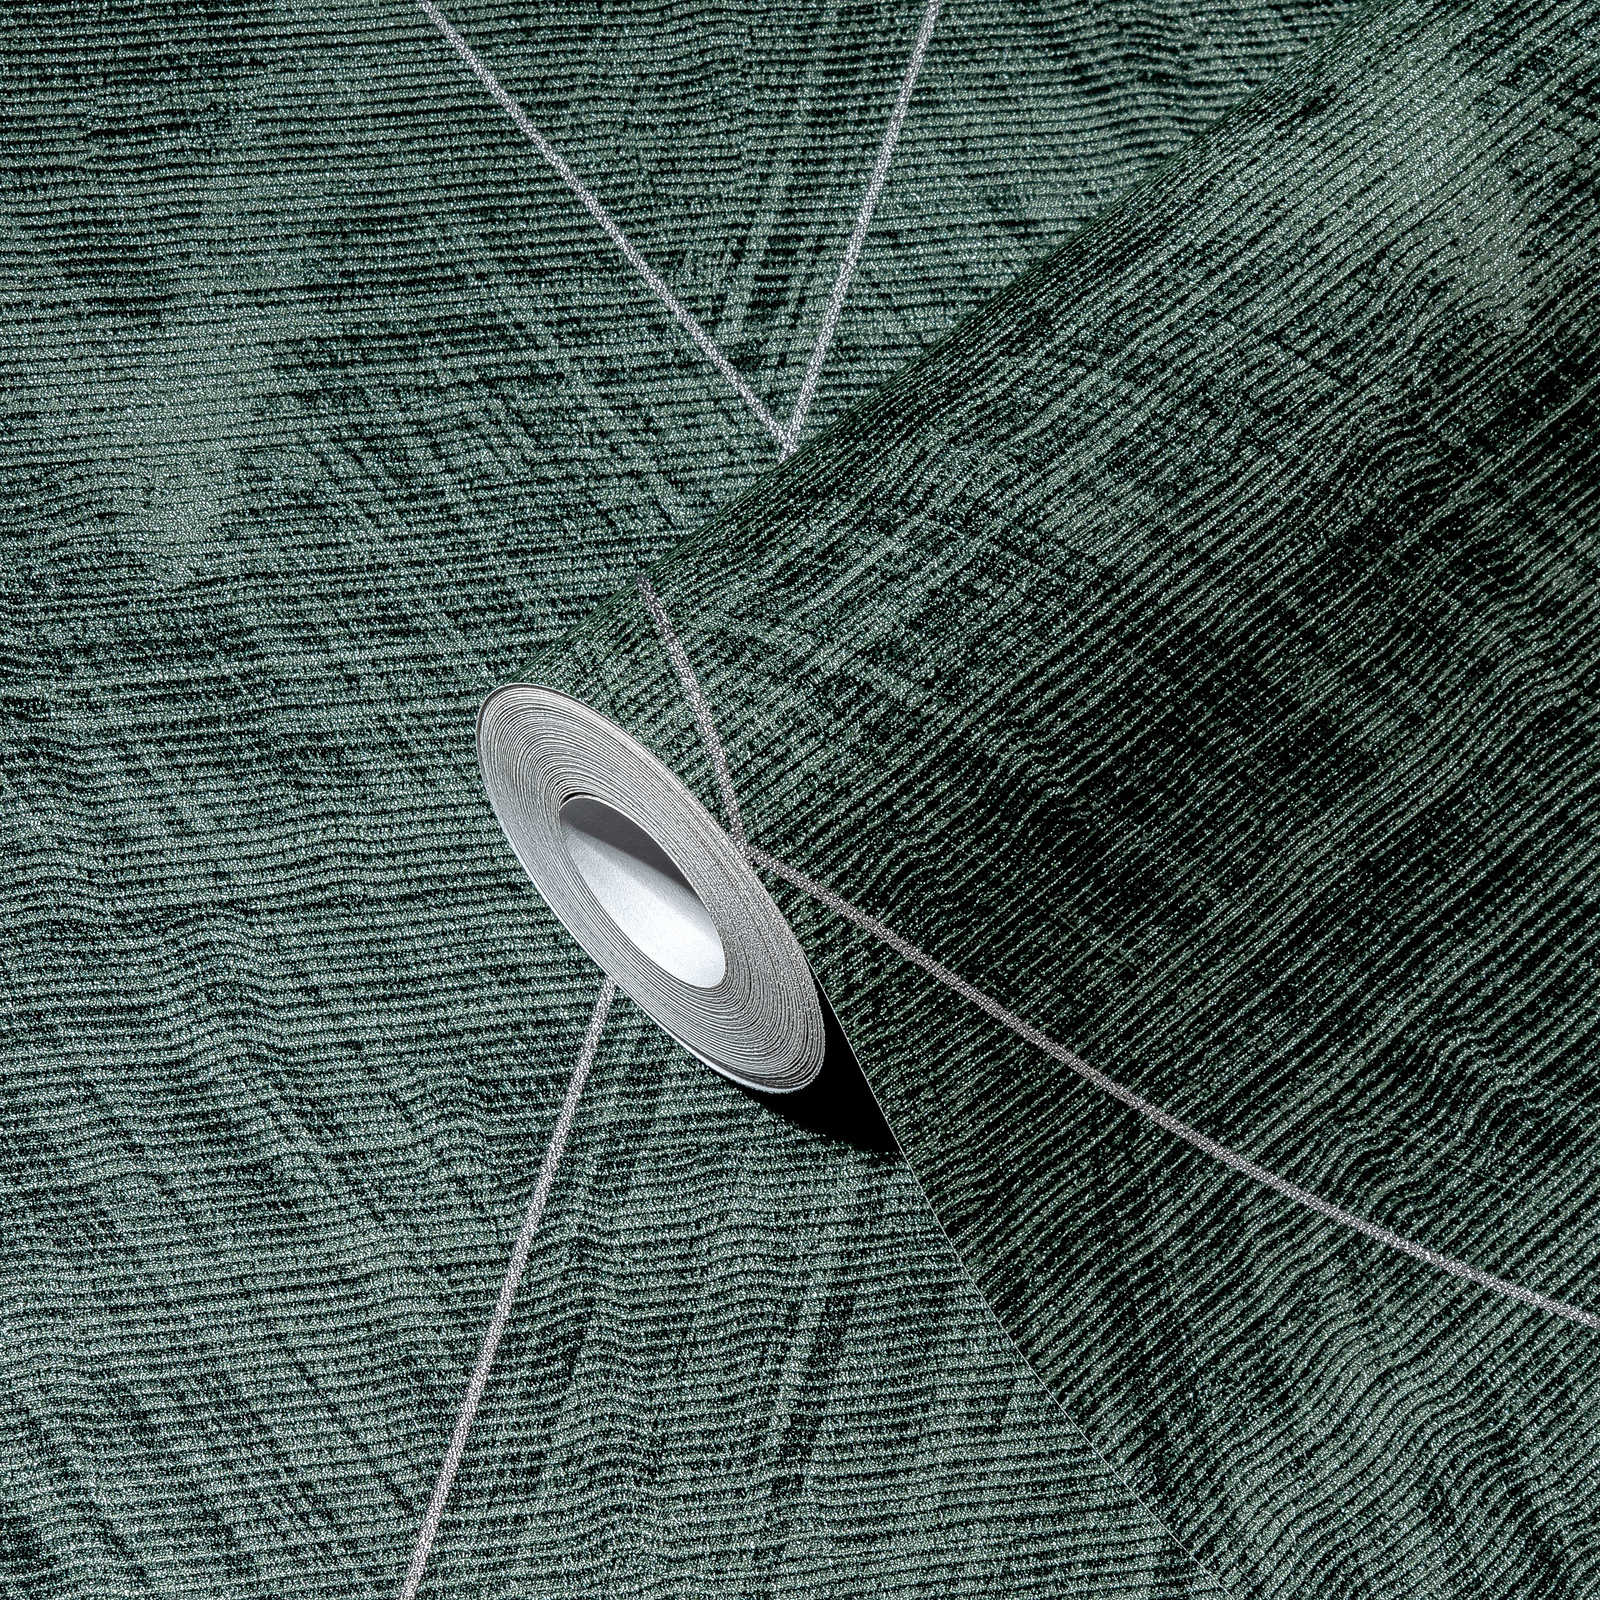             Papier peint losange avec aspect textile chiné - métallique, vert
        